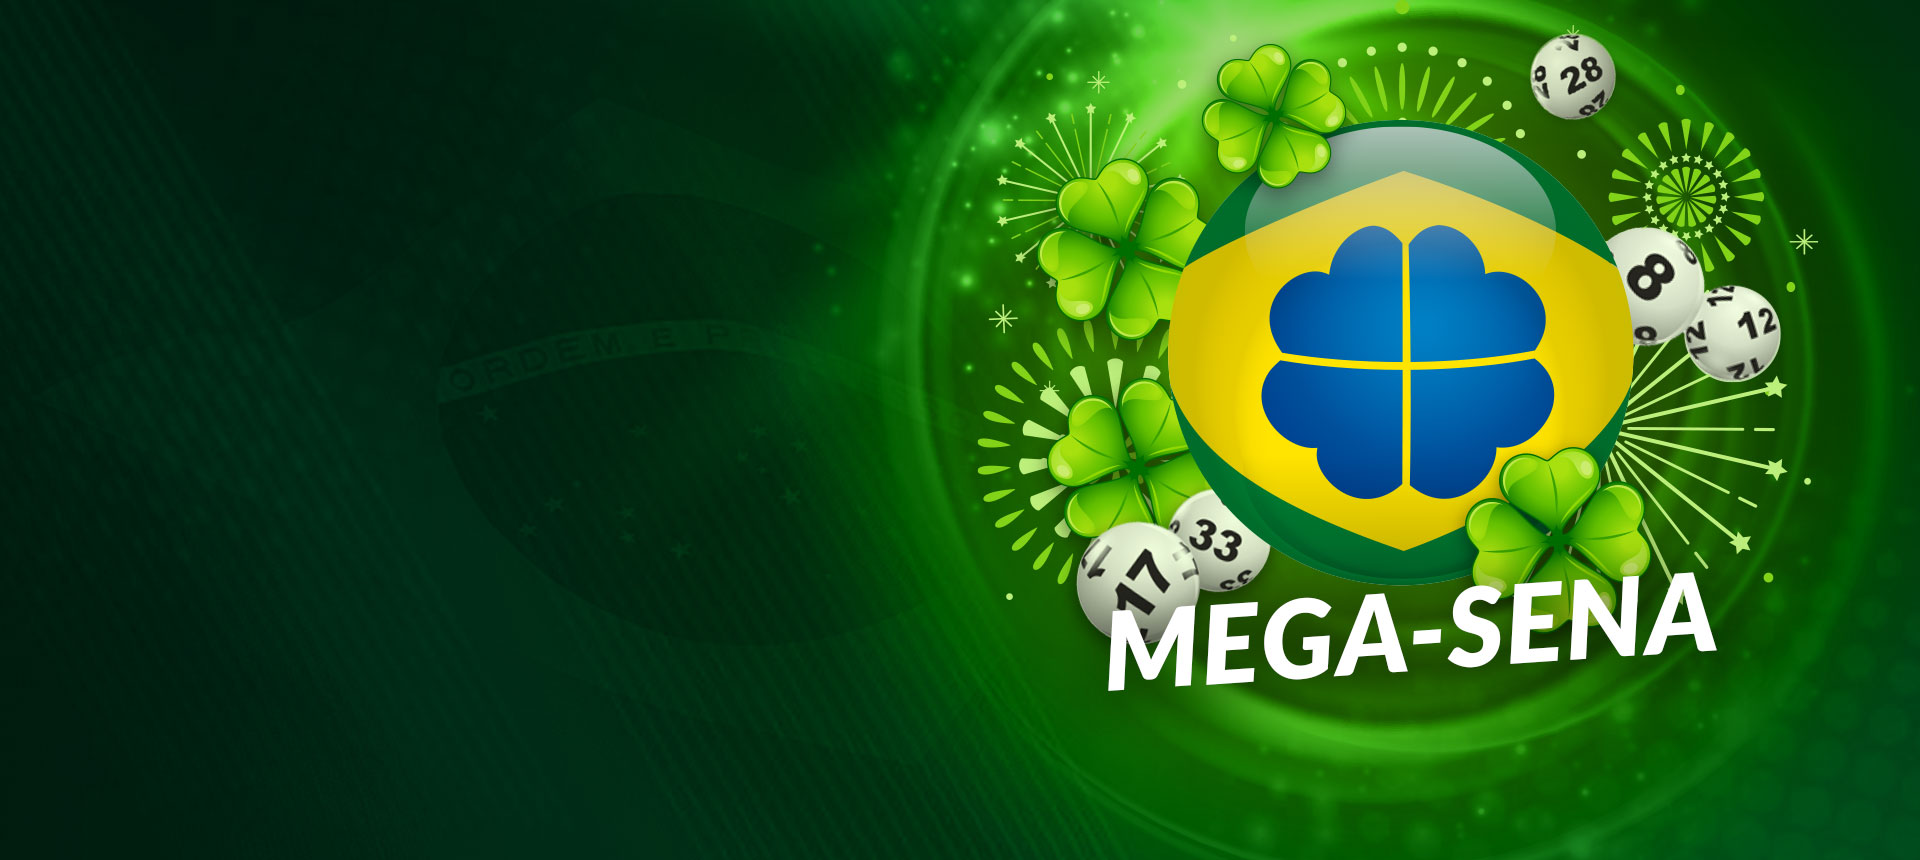 Jogue na Mega-Sena agora por R$65 Milhões!